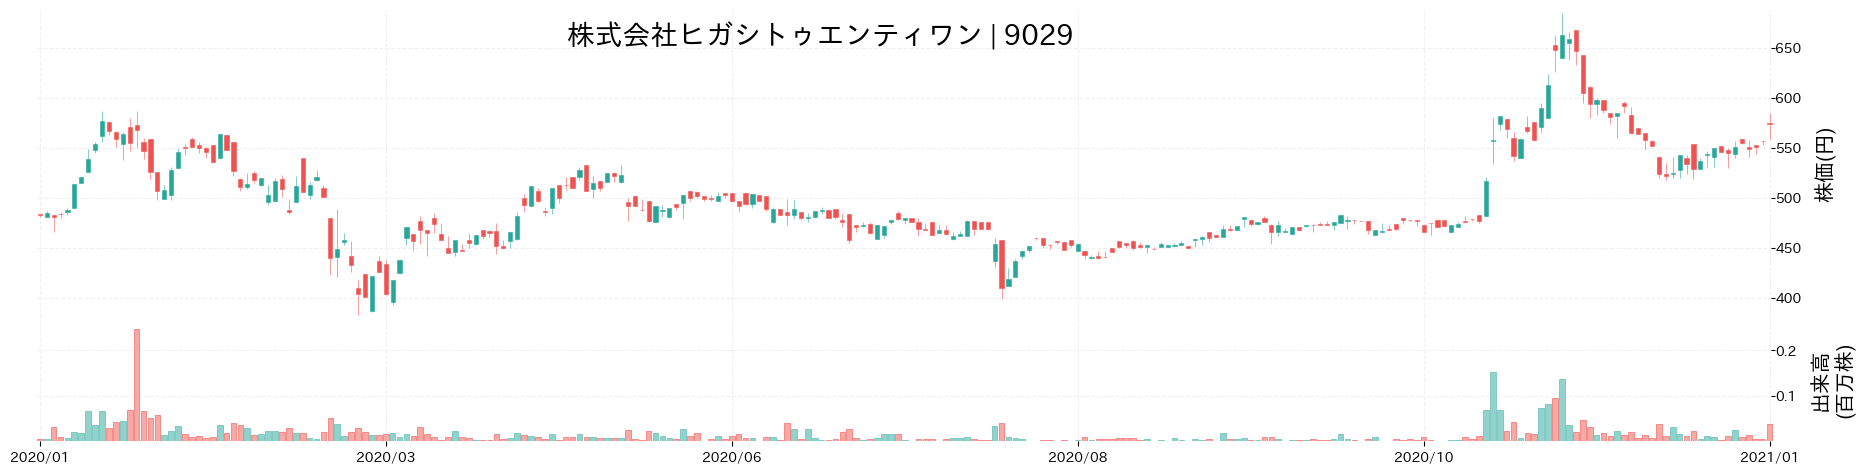 ヒガシトゥエンティワンの株価推移(2020)